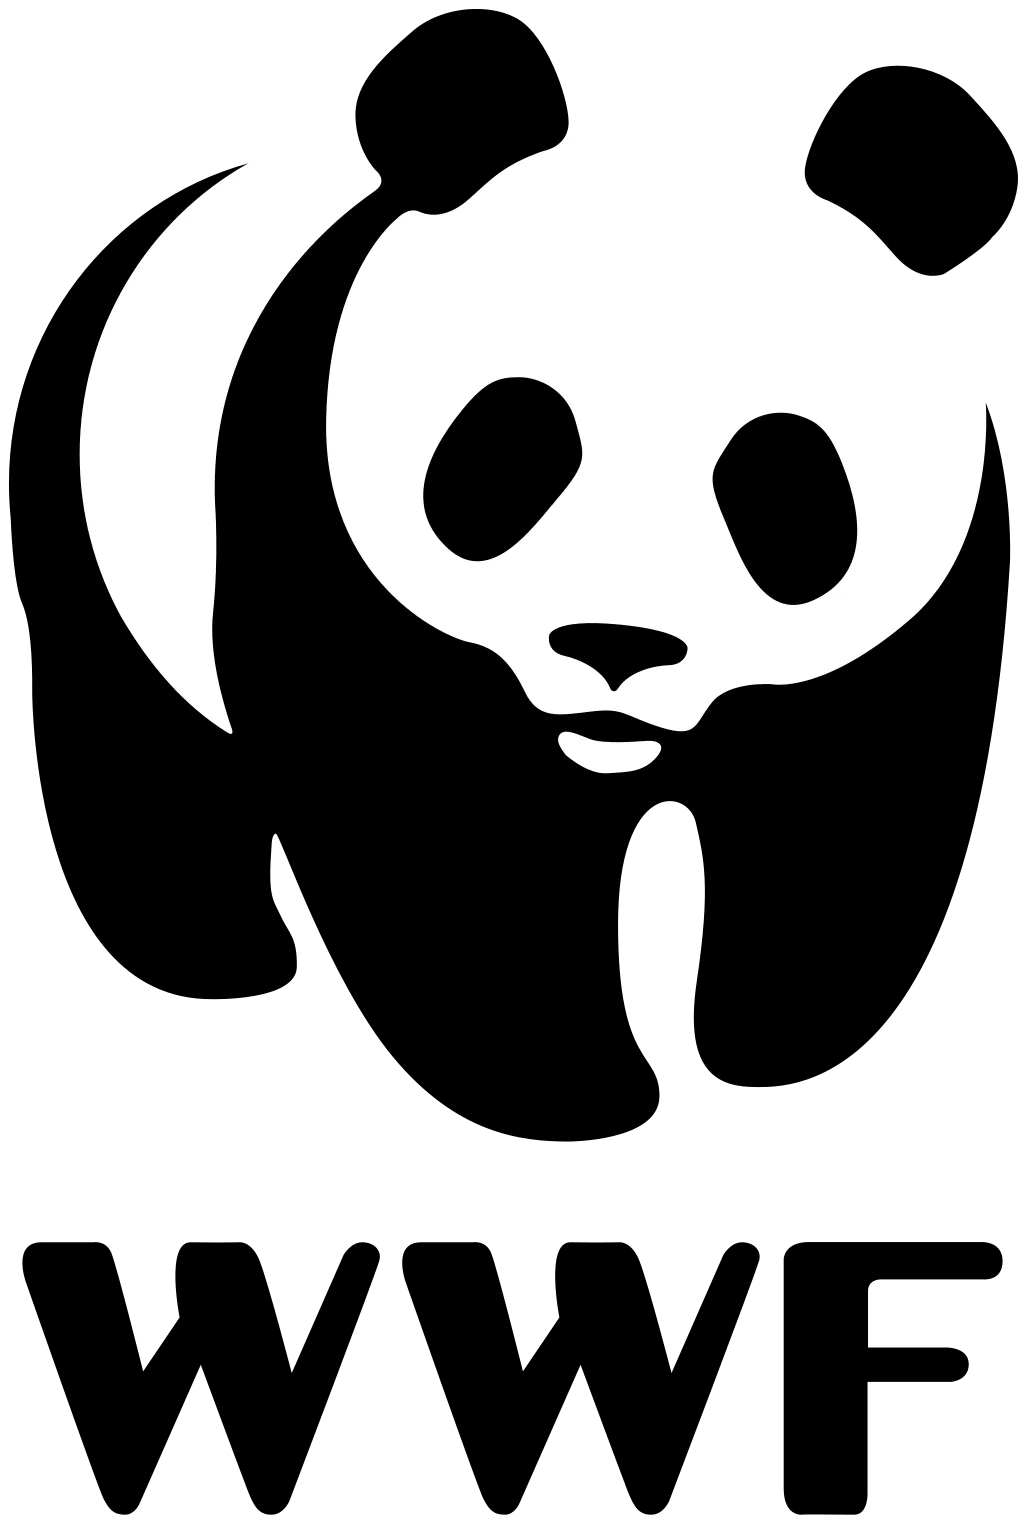 WWF company logo